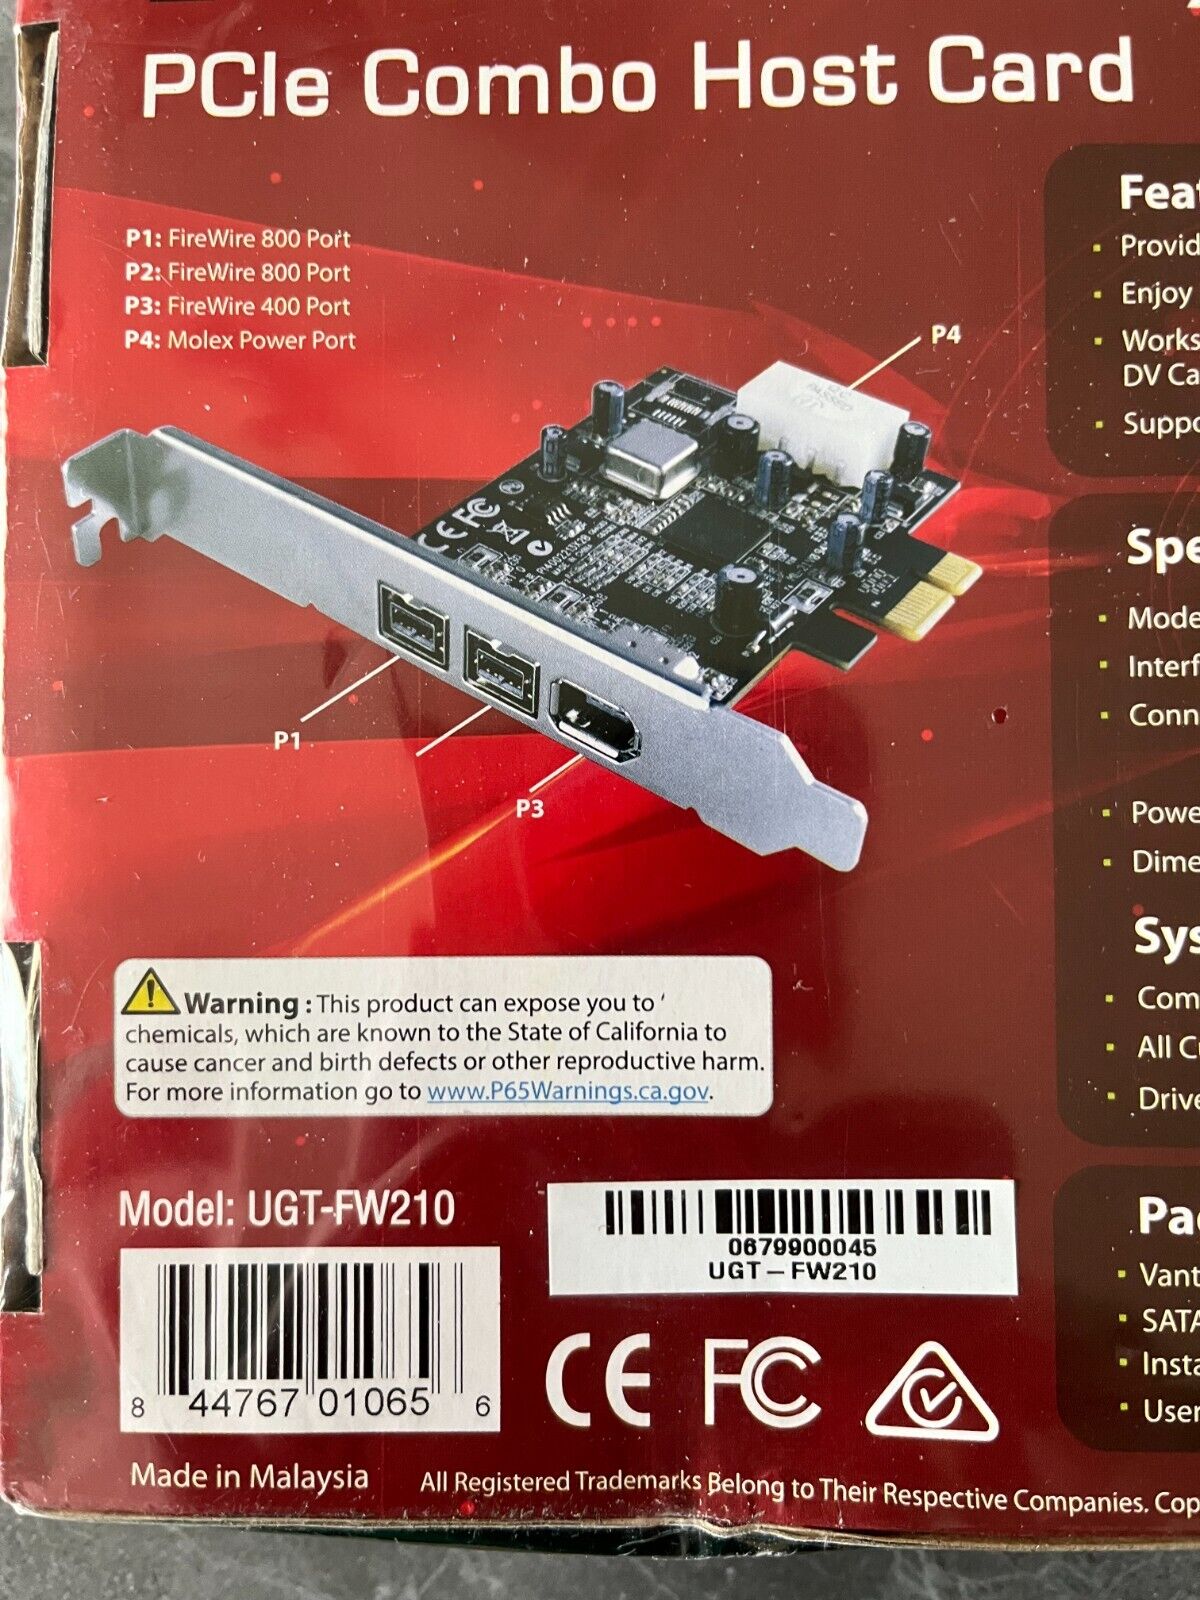 Vantec 2+1 FireWire 800/400 PCIe Combo Host Card UGT-FW210 Fire Wire Ports Vantec UGT-FW210 - фотография #4